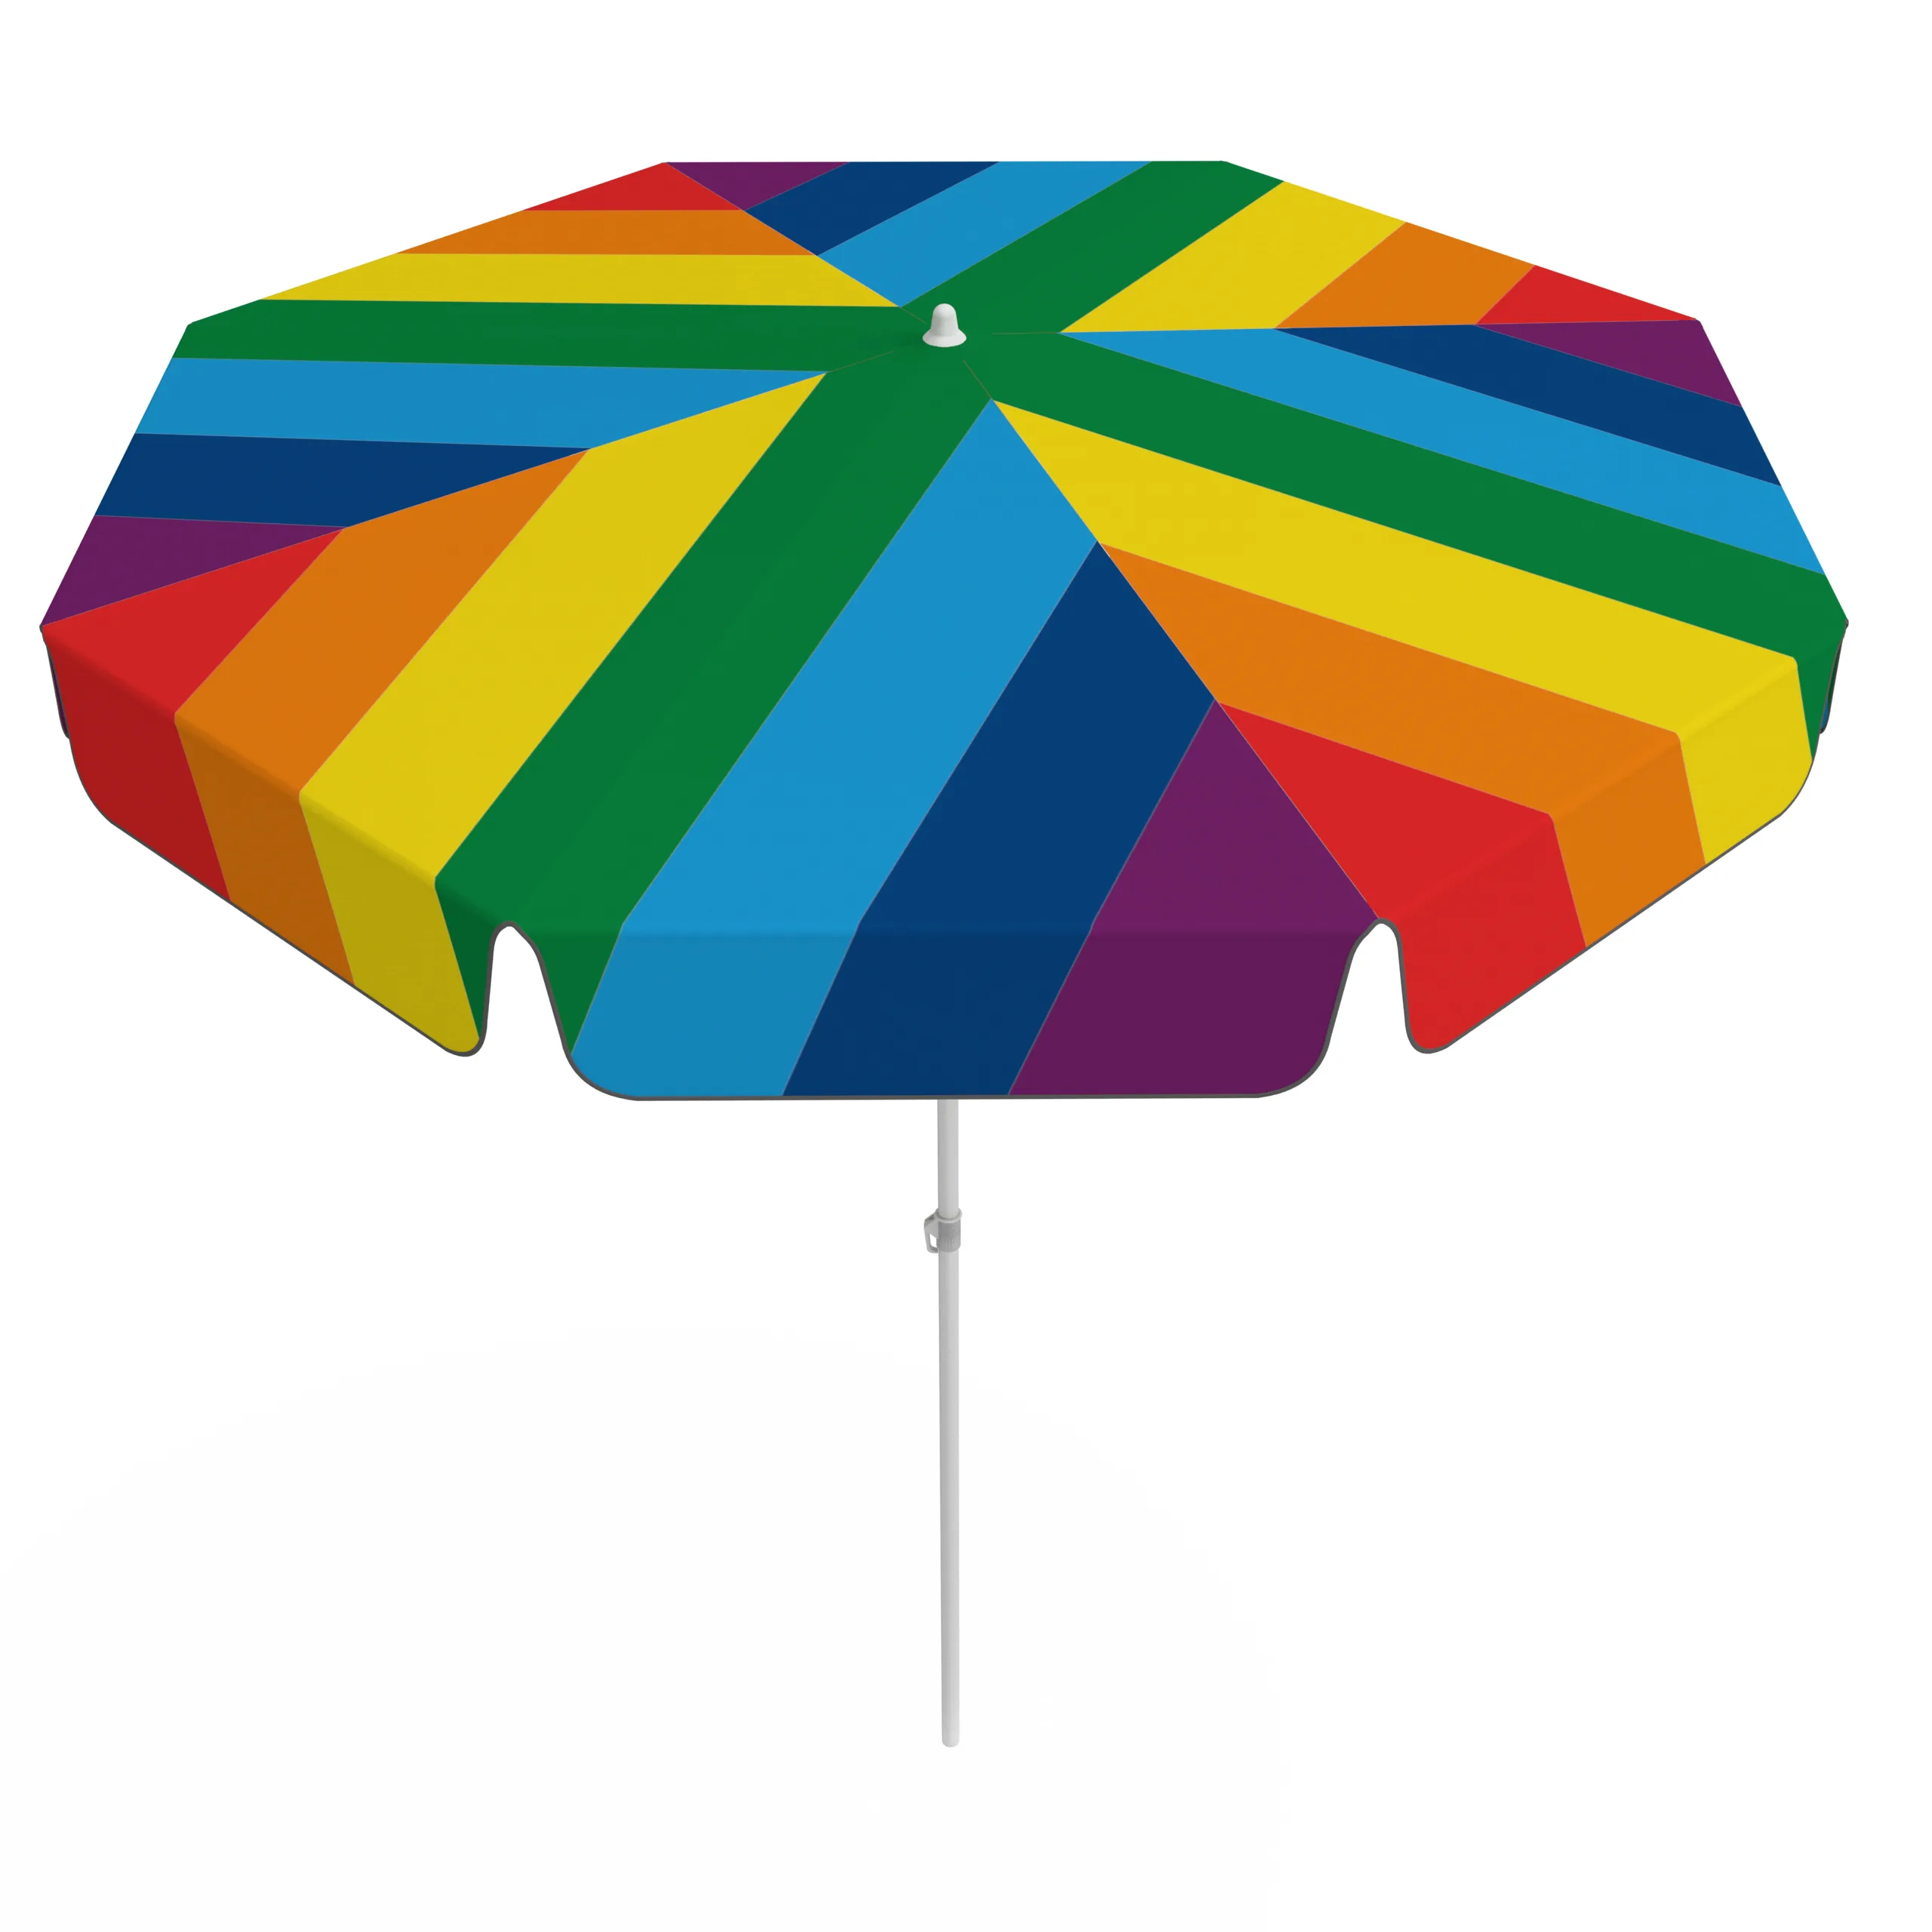 Sonnenschirm mit Regenbogen-Design